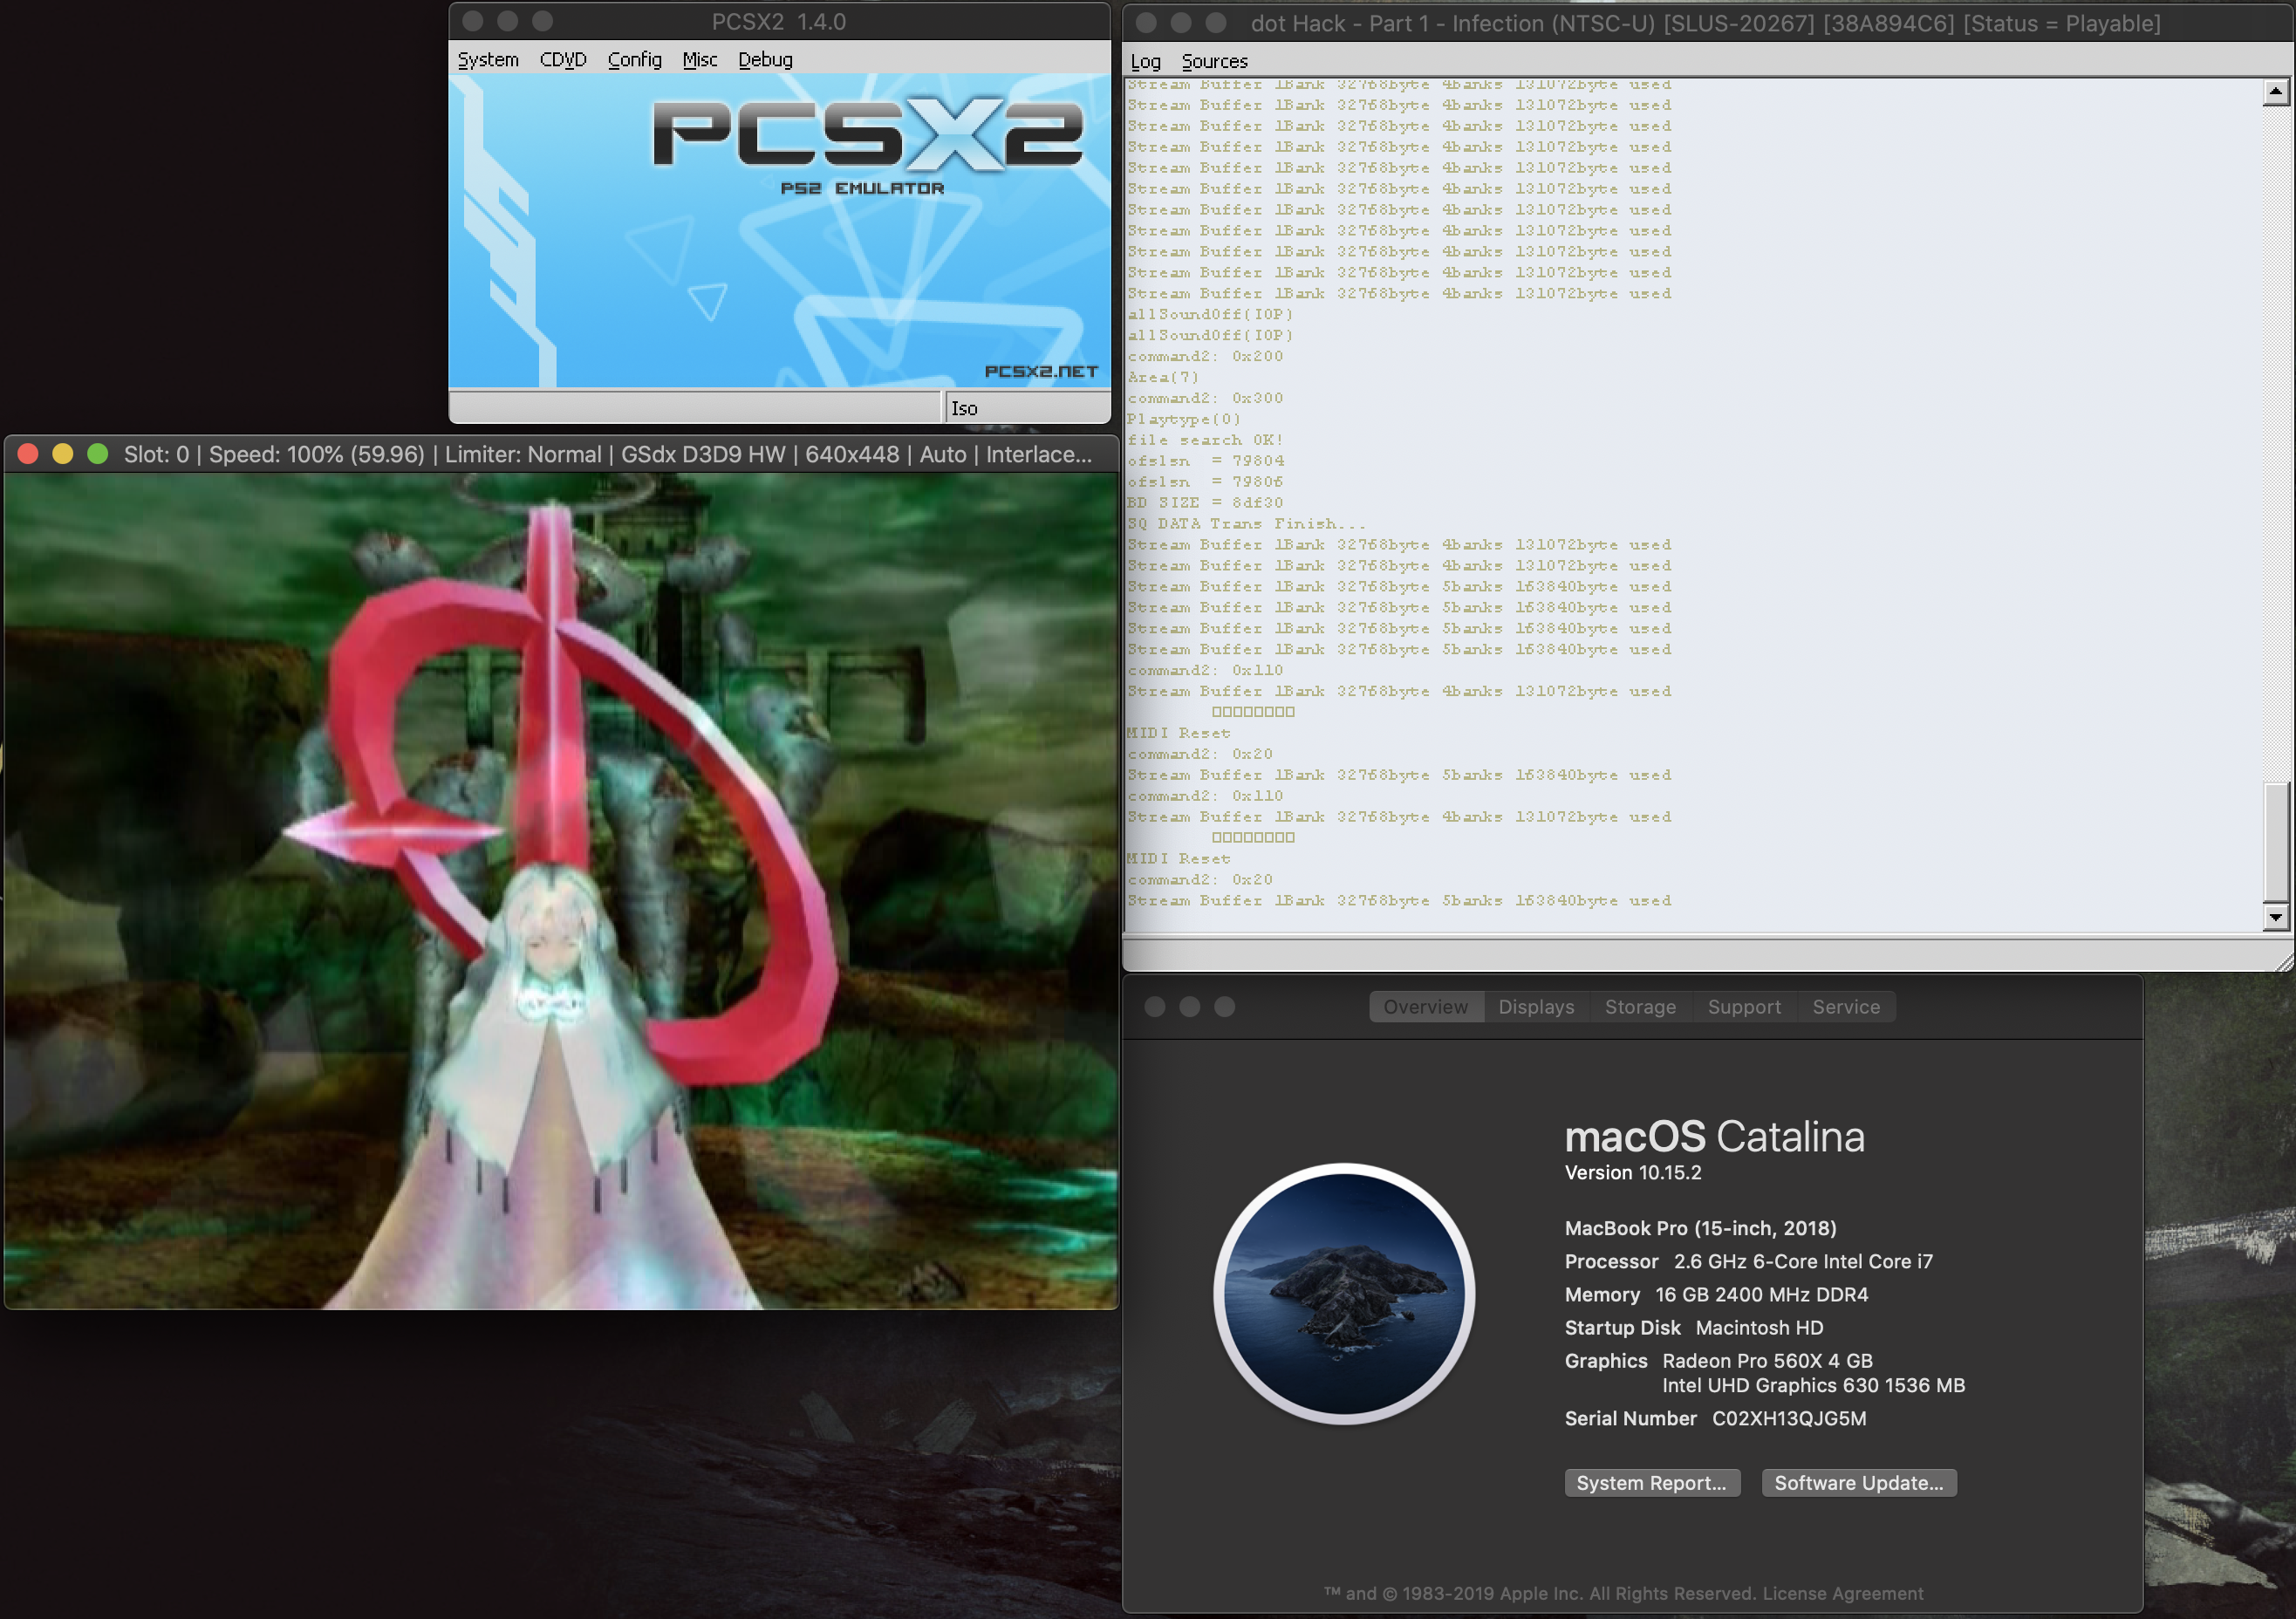 pscsx2 emulator can